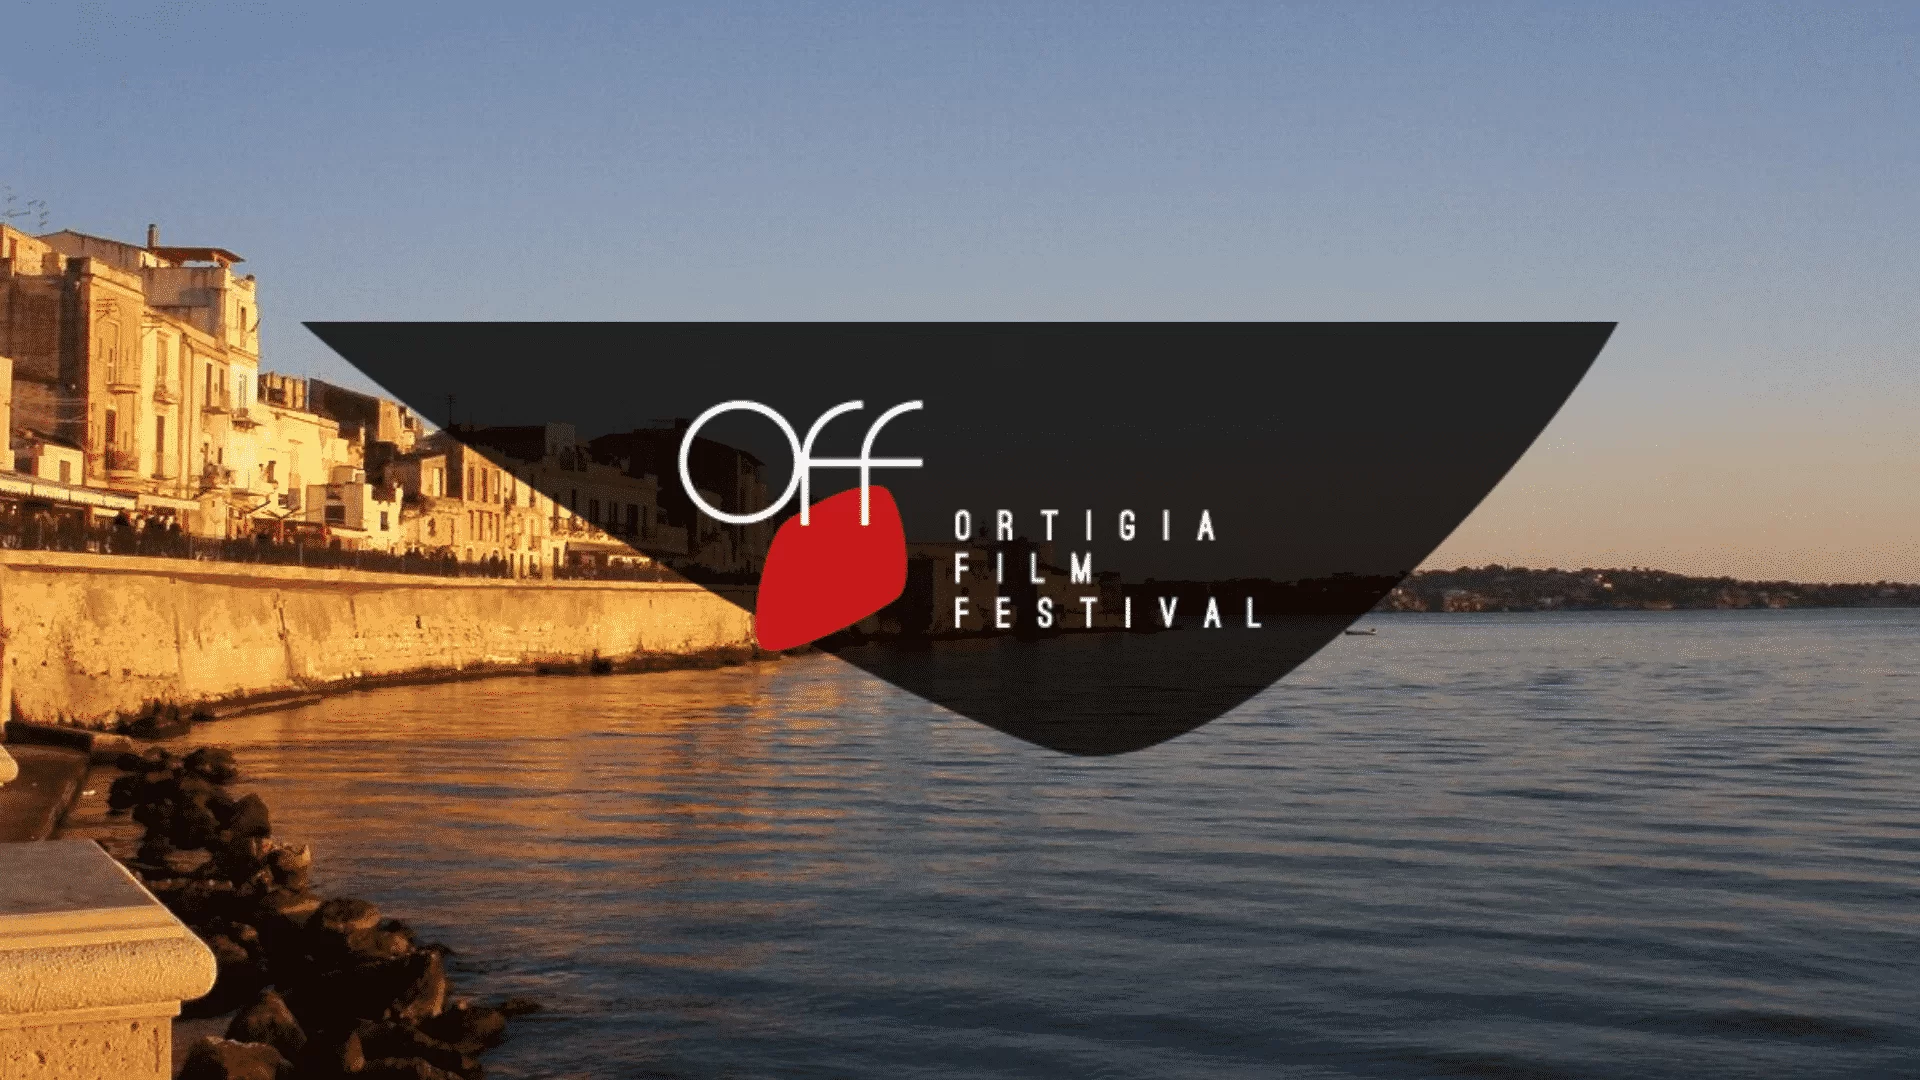 Ortigia Film Festival: dal 6 al 13 luglio 2024